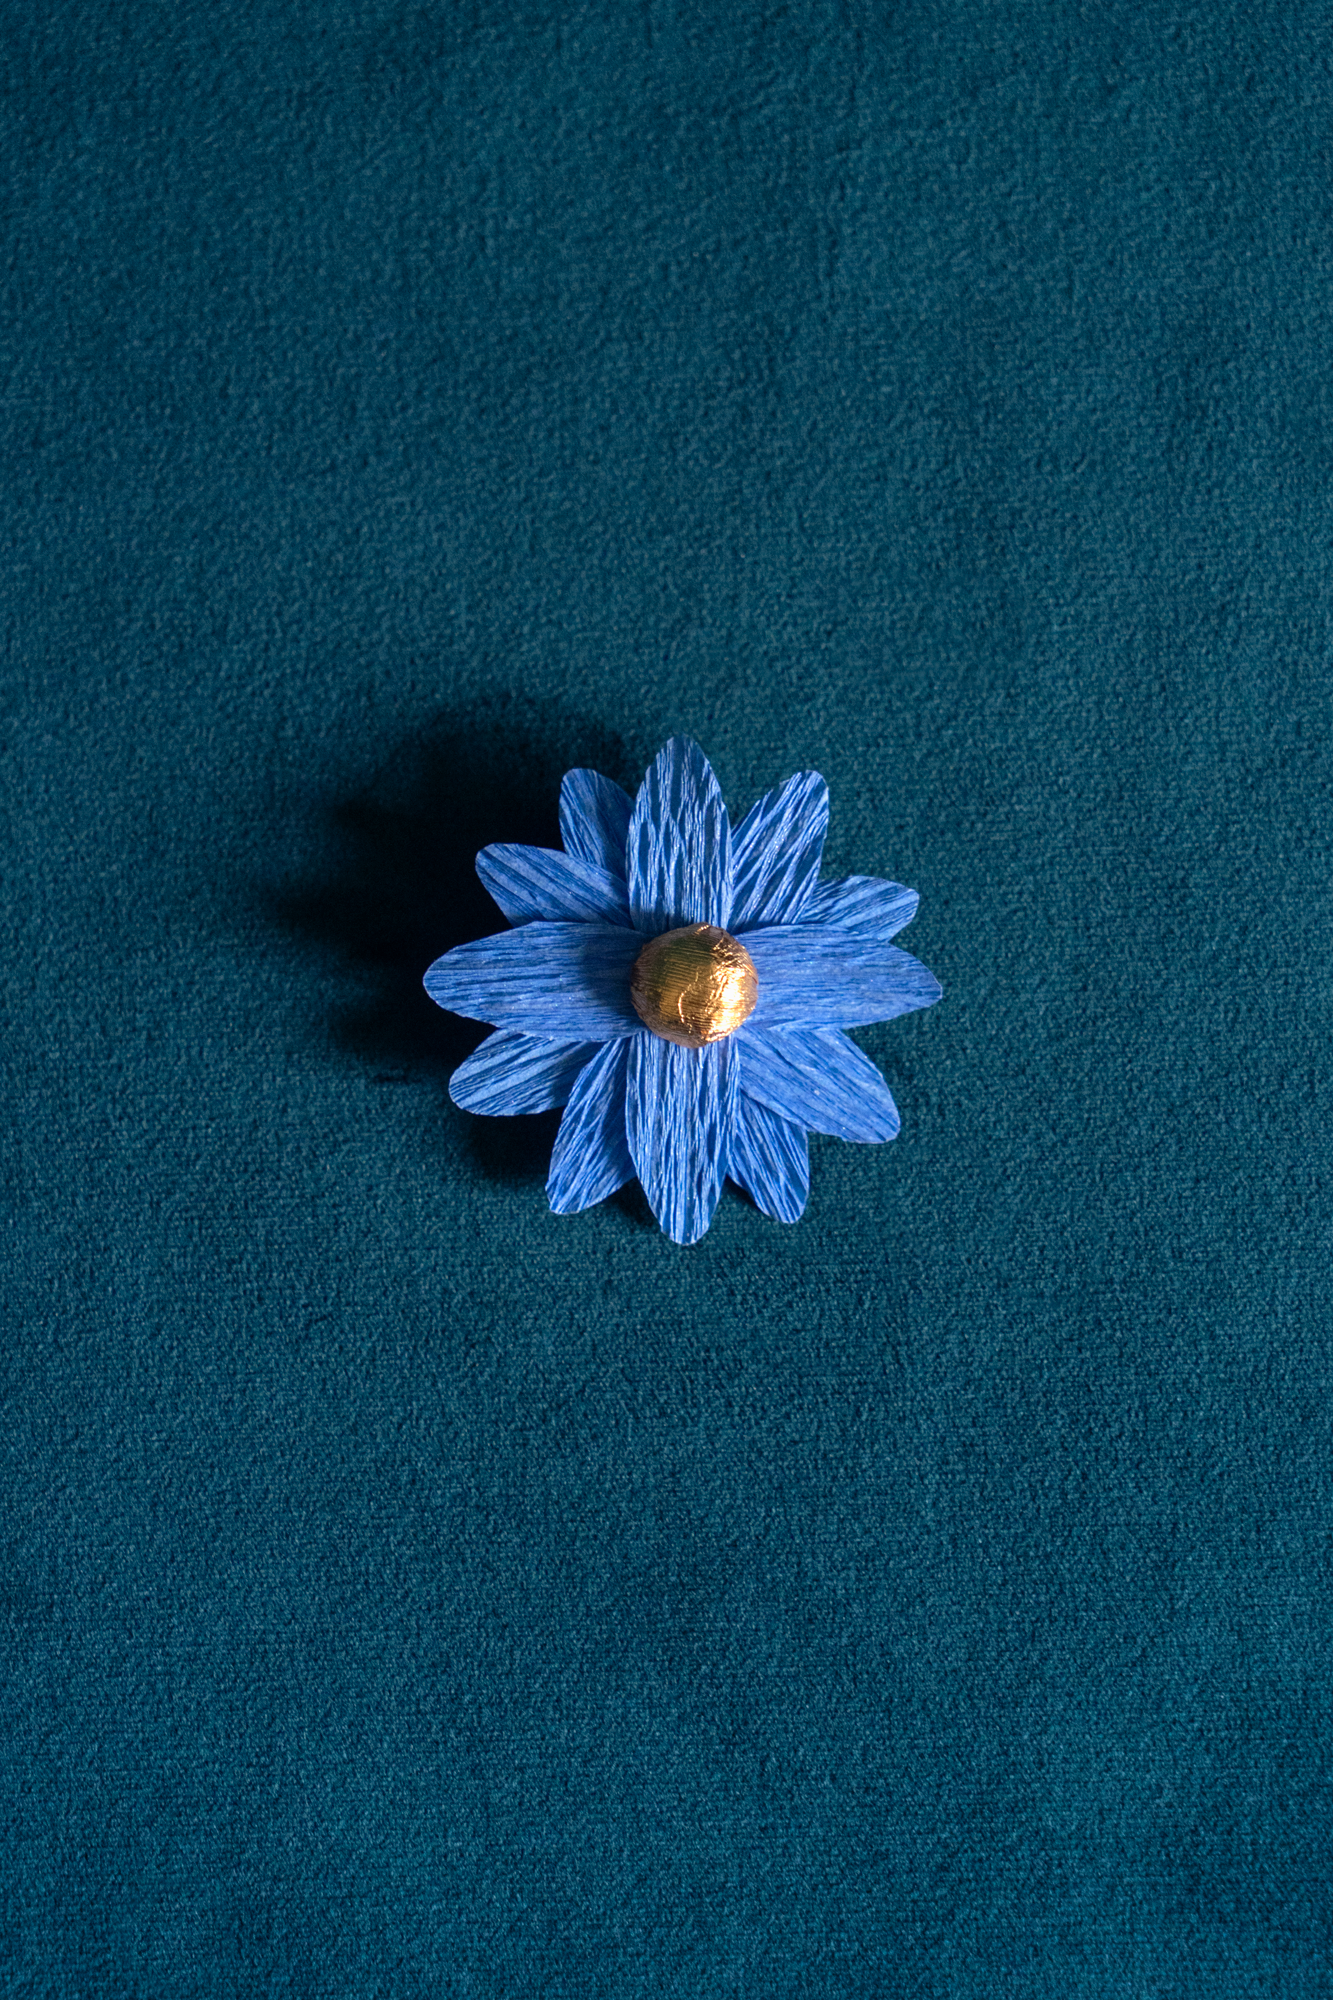 Broche Marguerite de Maison Tessier couleur Bleuet coeur Or, sur tissus velour émeraude